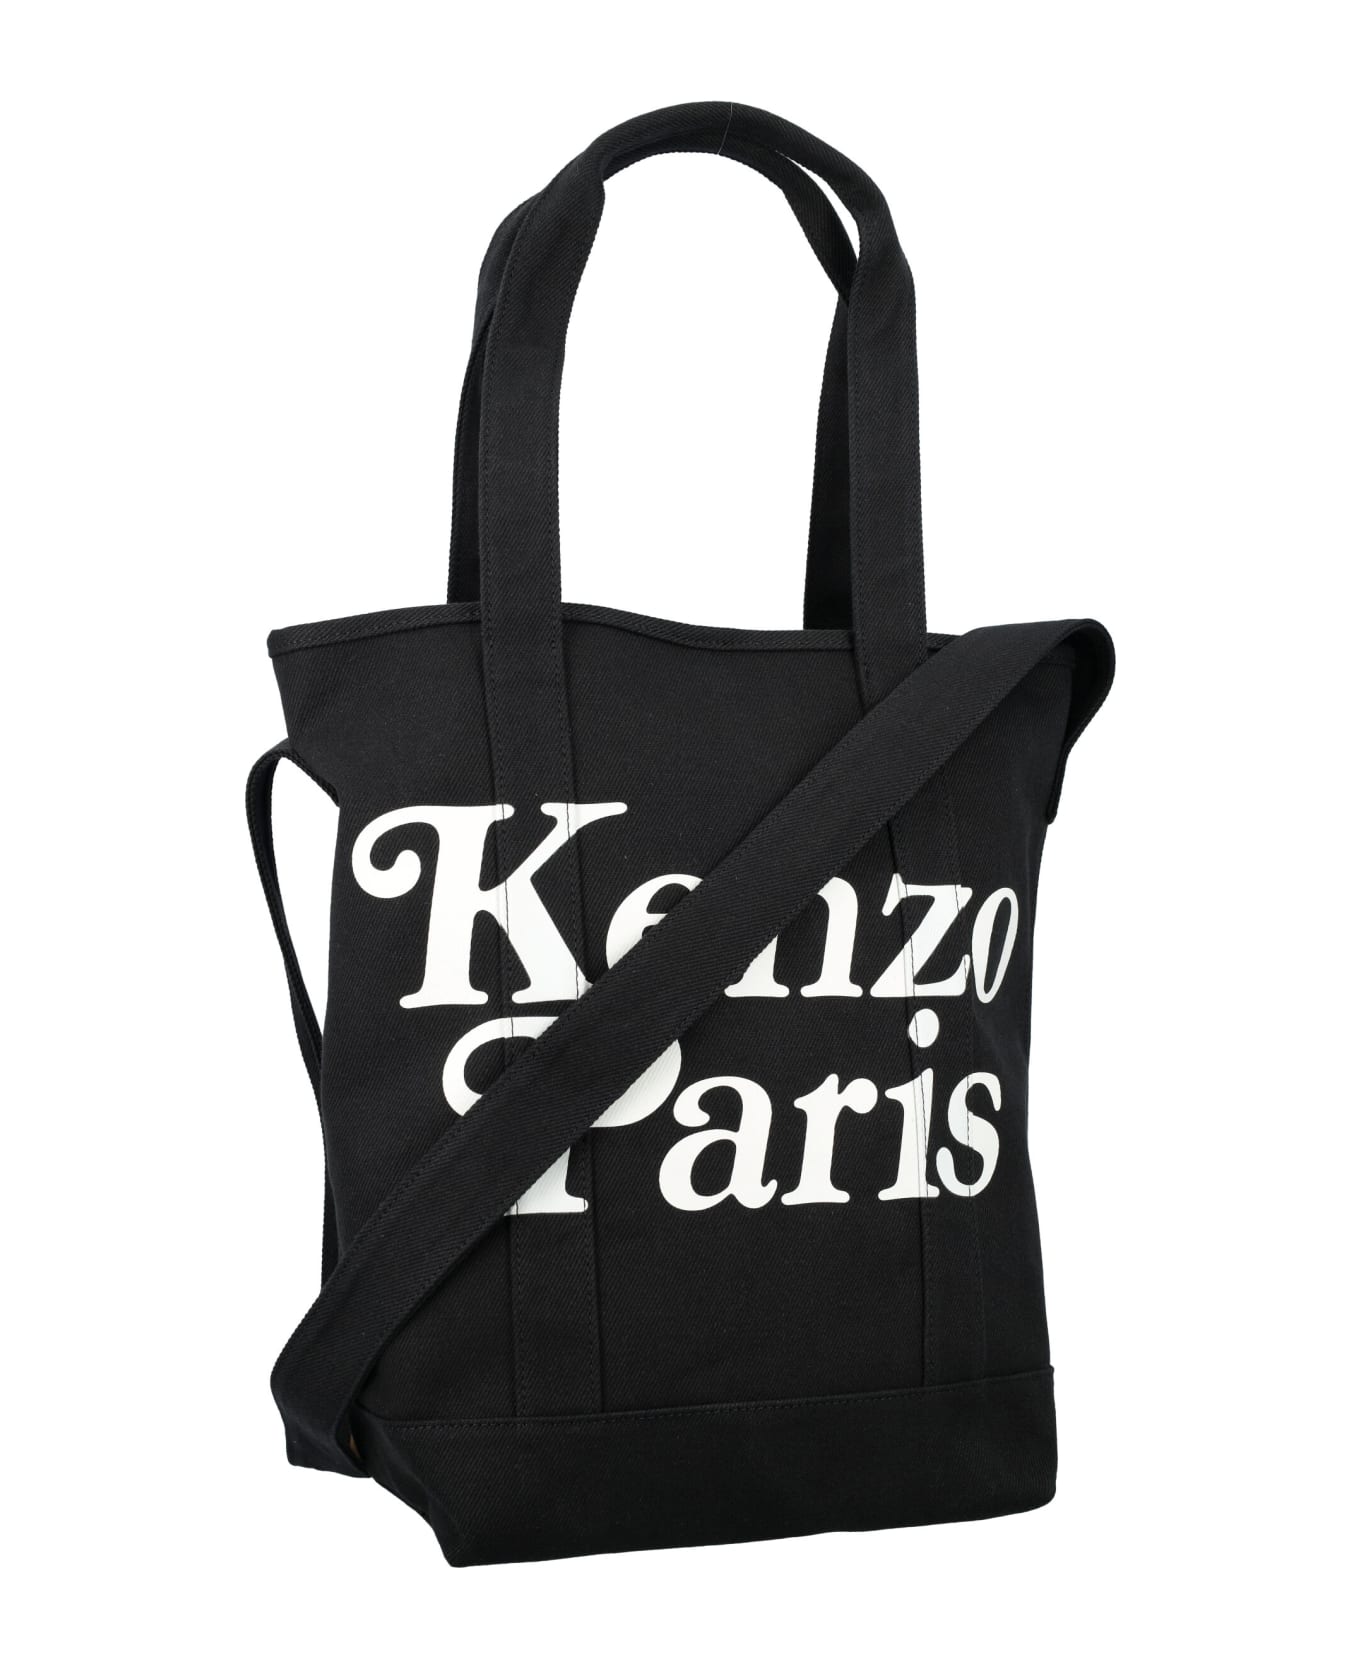 Kenzo Paris Tote Bag - BLACK トートバッグ